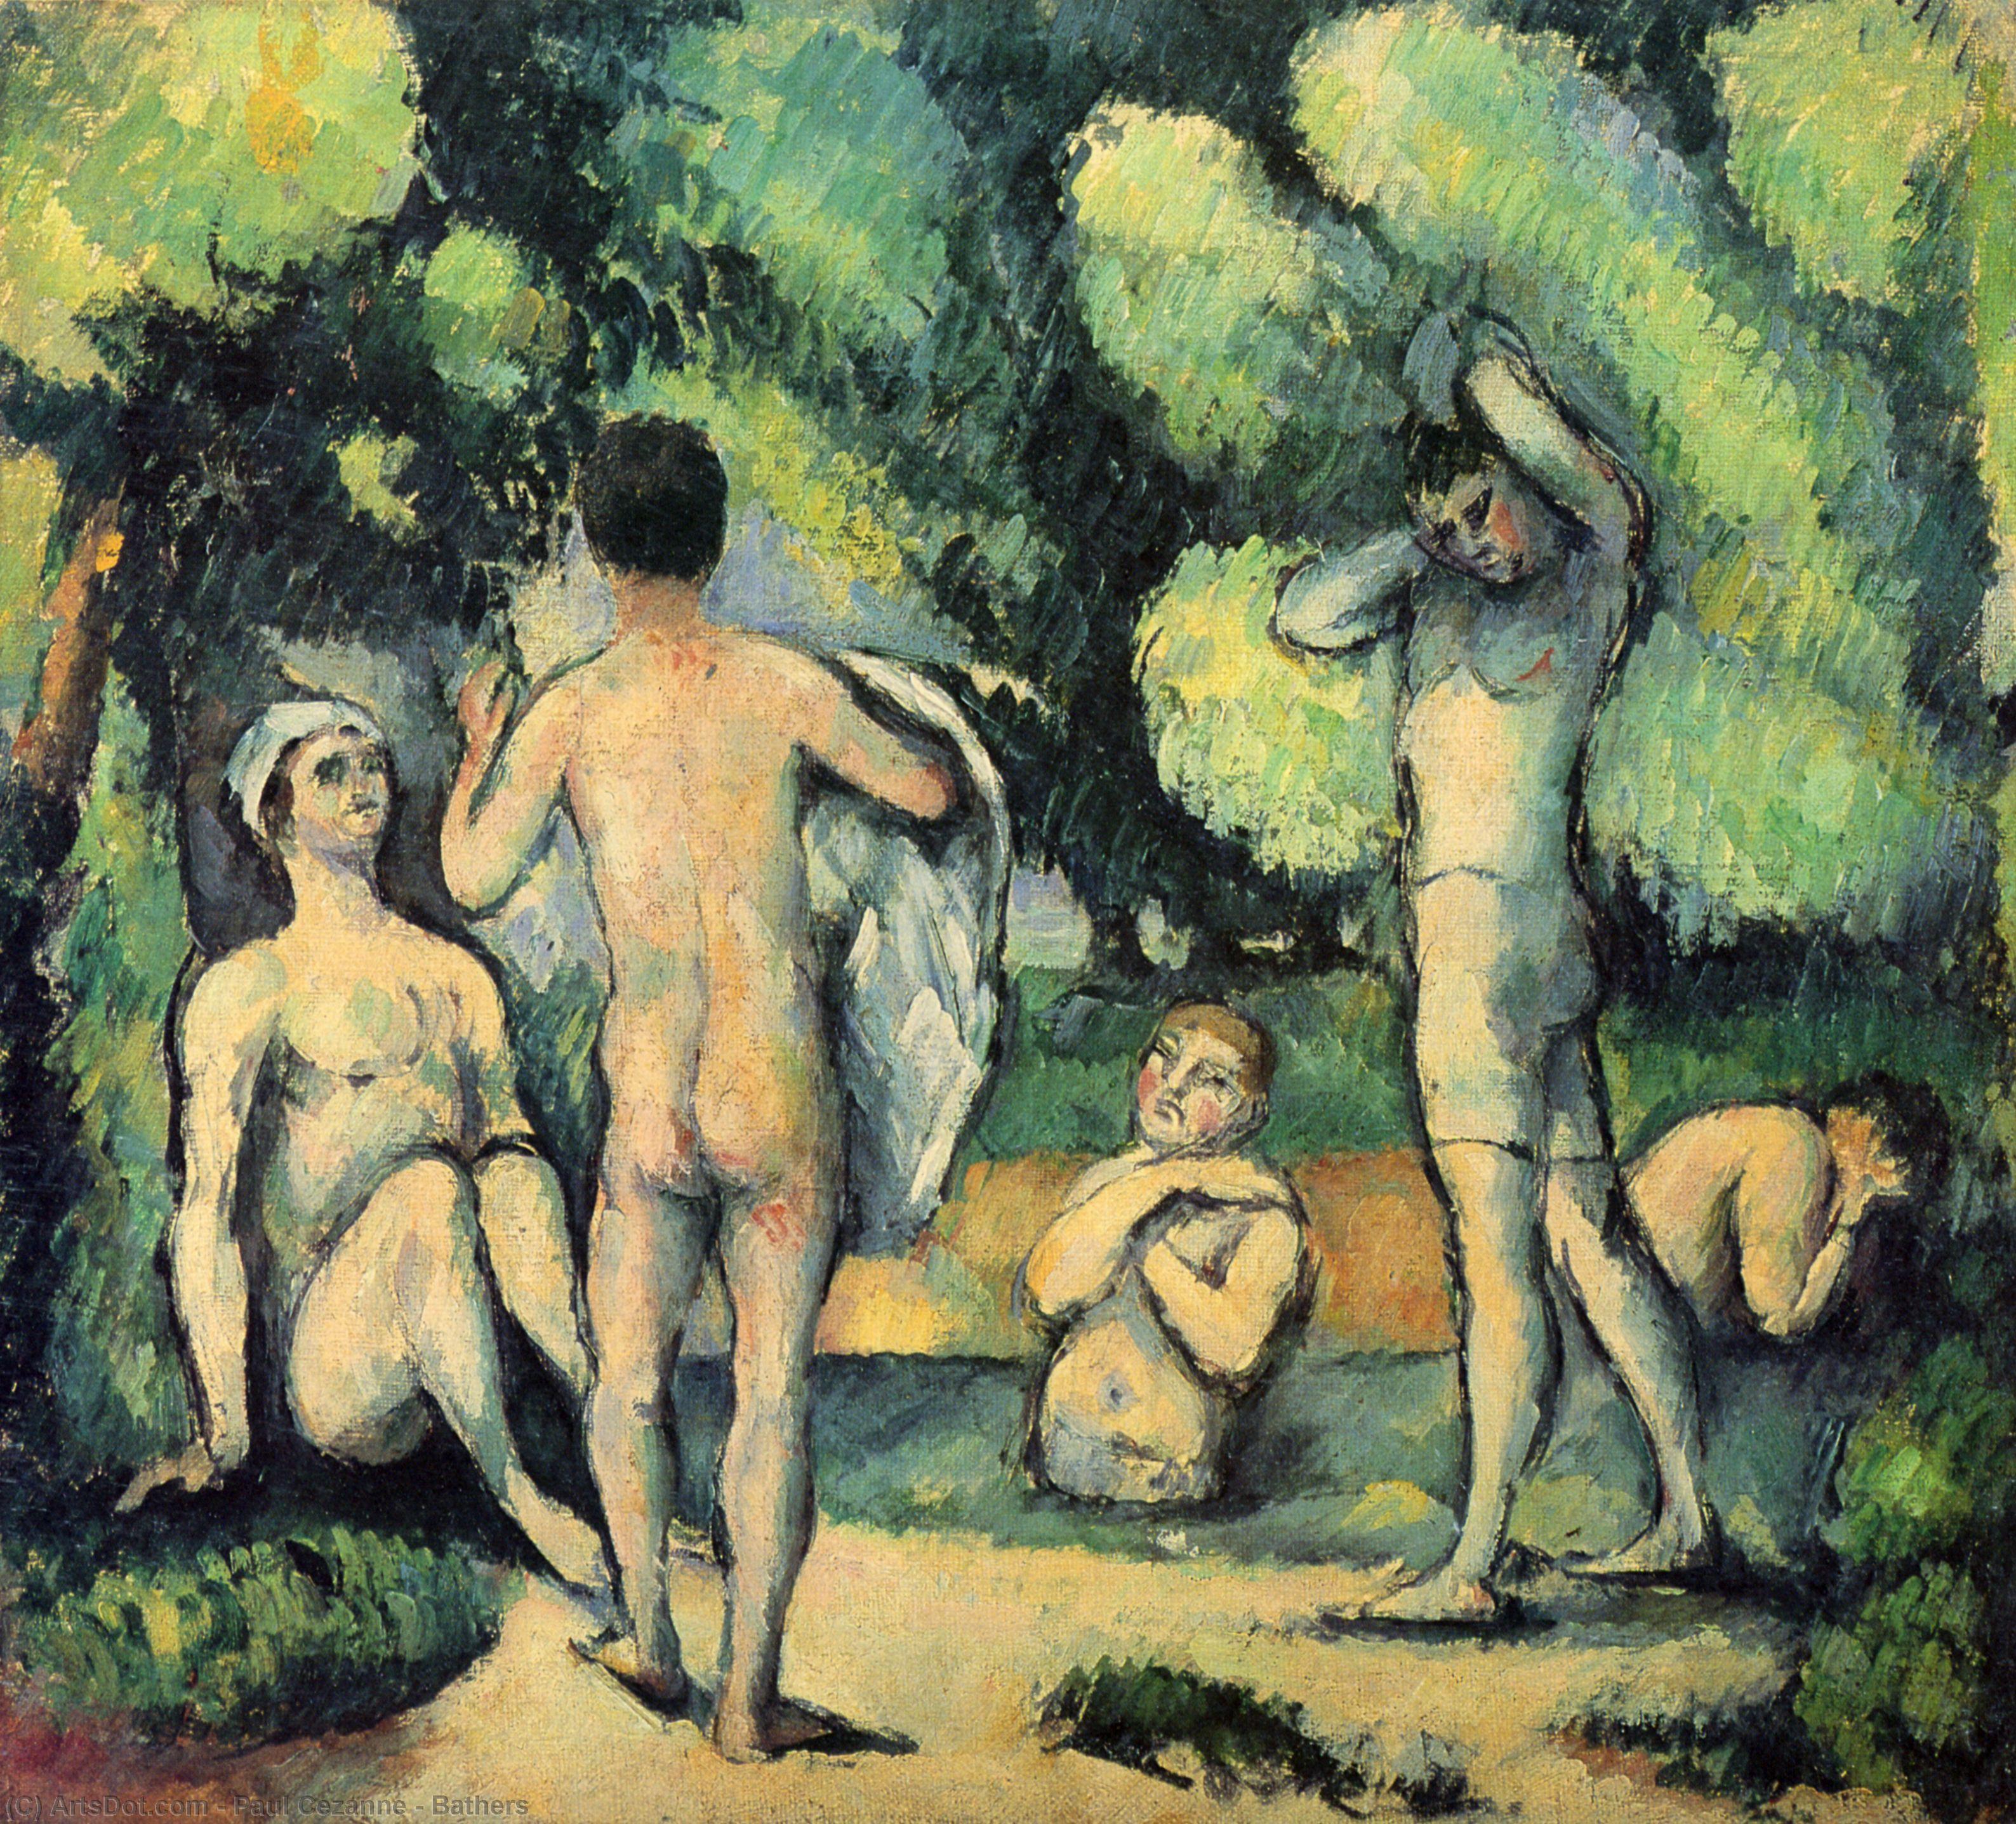 WikiOO.org - Encyclopedia of Fine Arts - Maleri, Artwork Paul Cezanne - Bathers